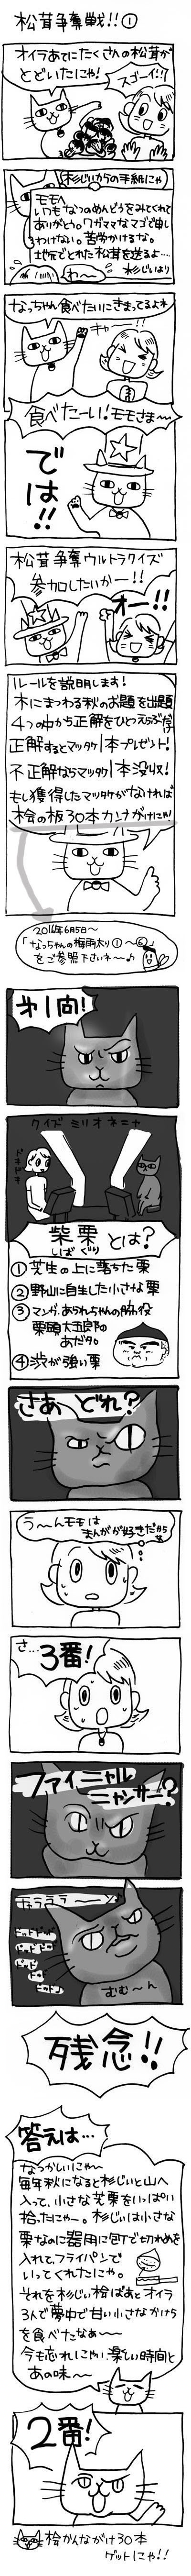 木工漫画　松茸争奪戦　１0926